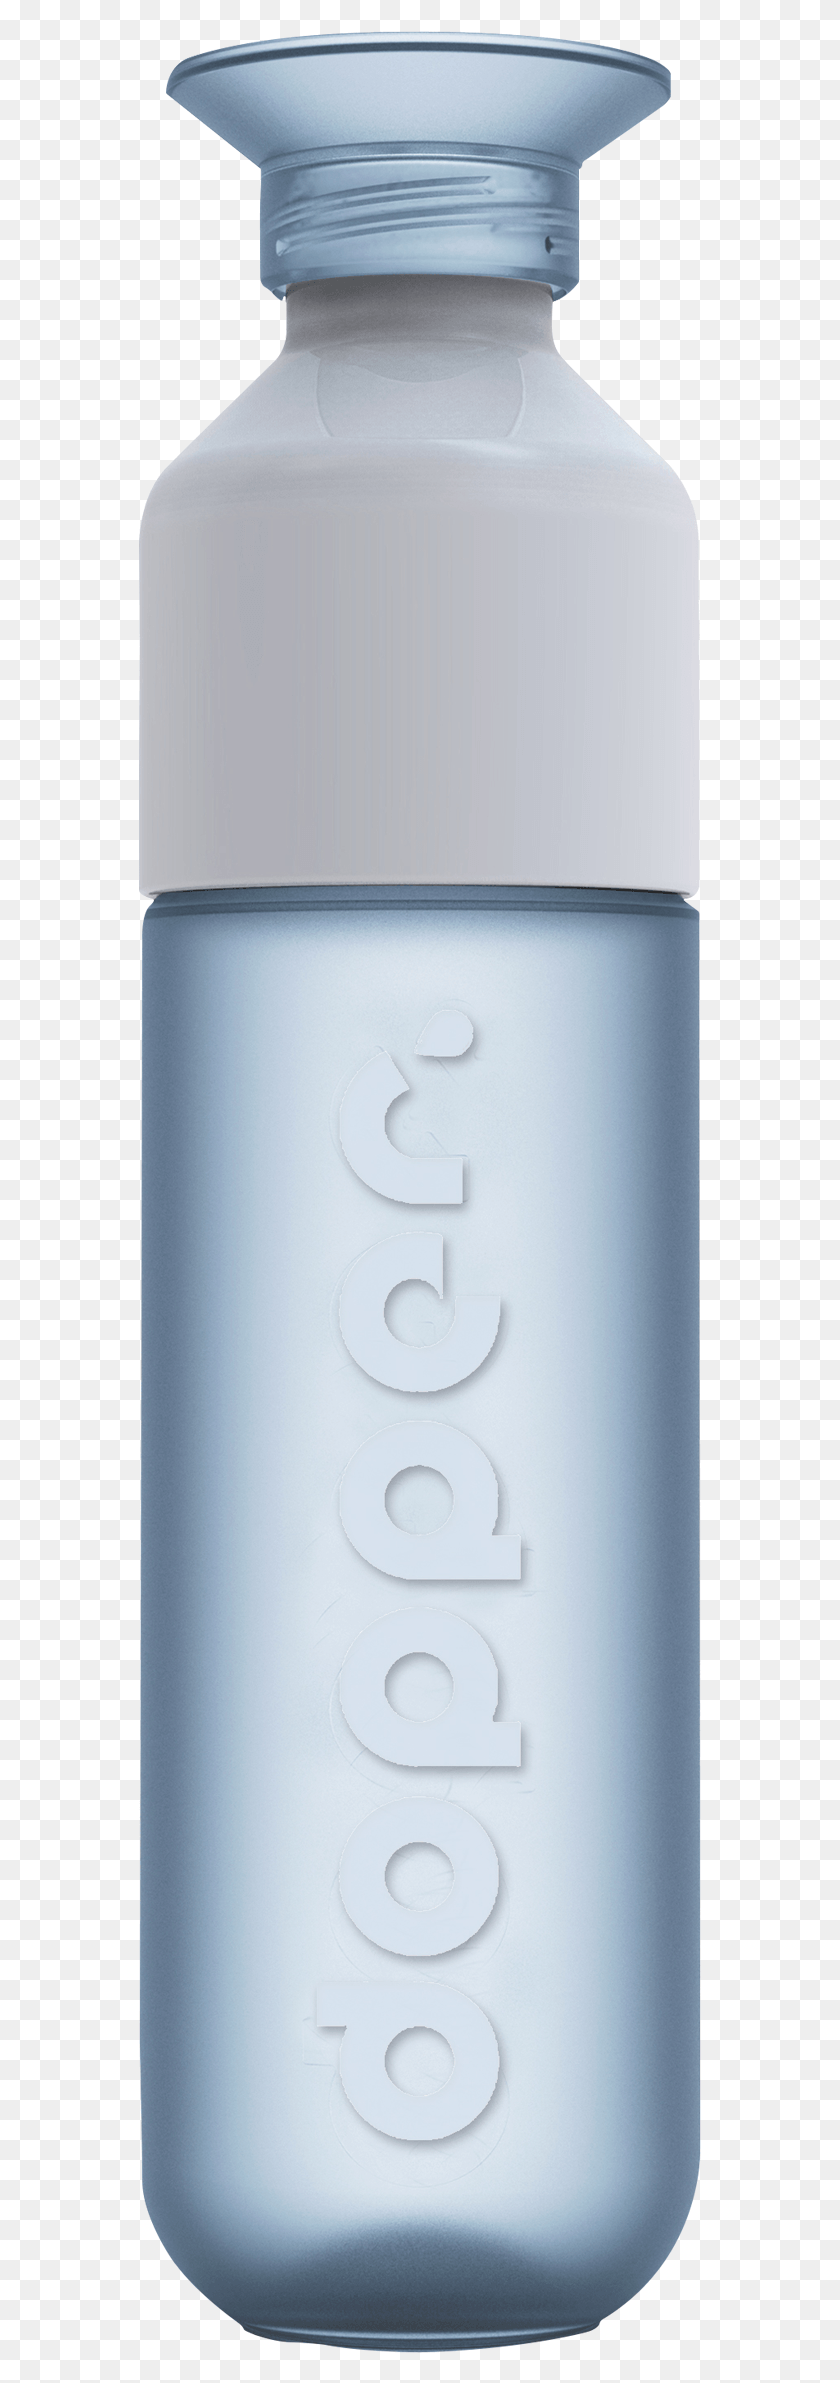 563x2323 Elija Su Color Botella De Agua De Países Bajos, Número, Símbolo, Texto Hd Png